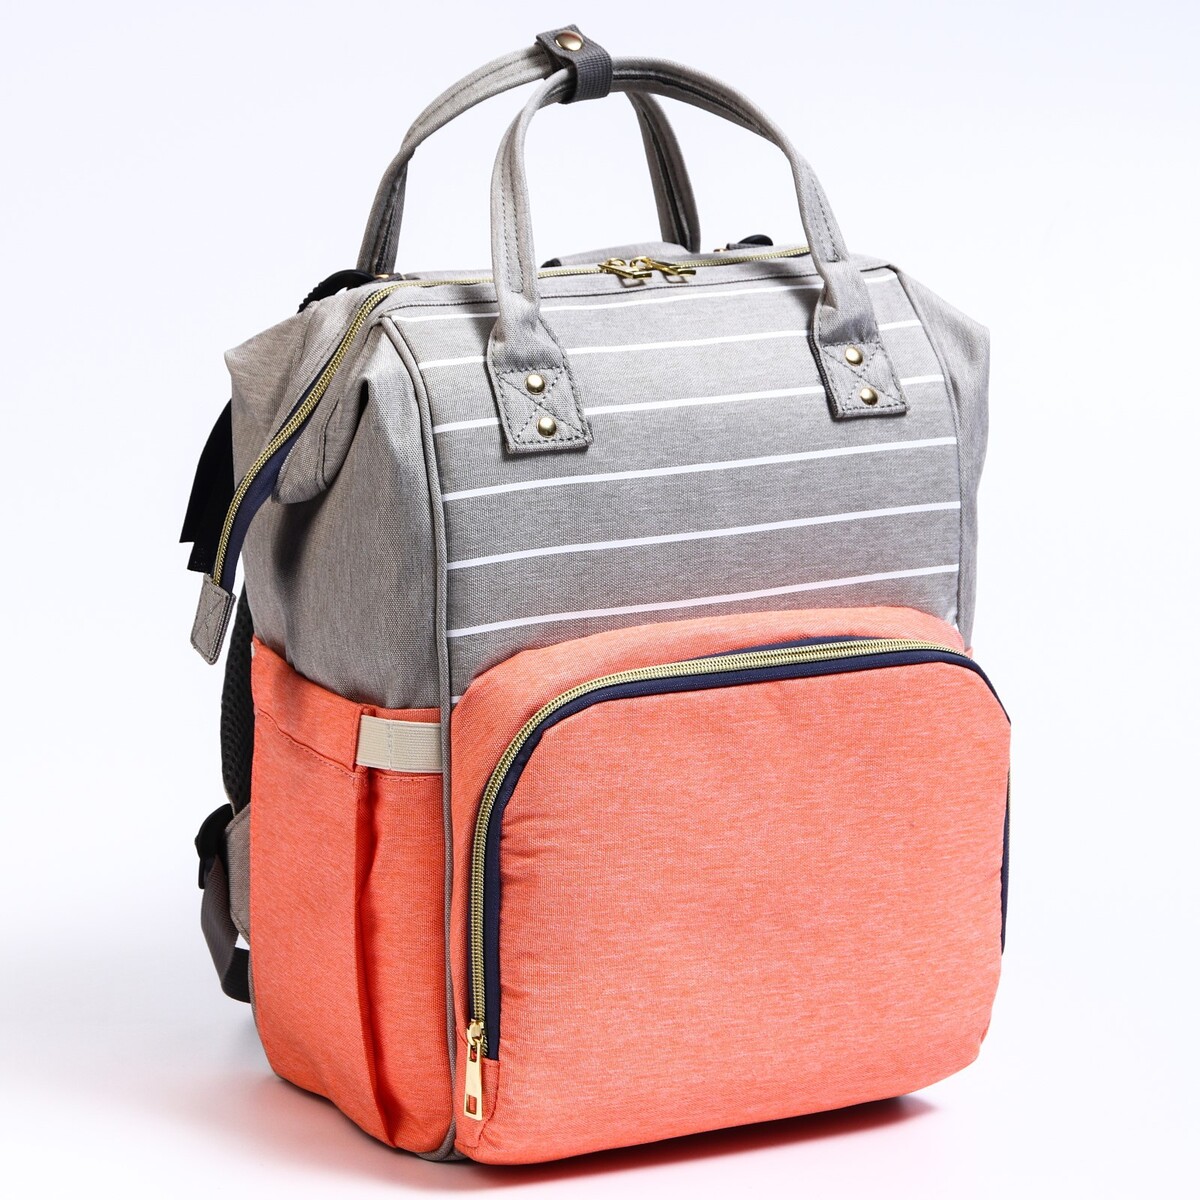 Рюкзак женский с термокарманом, термосумка - портфель, цвет серый/розовый рюкзак женский с термокарманом термосумка портфель розовый